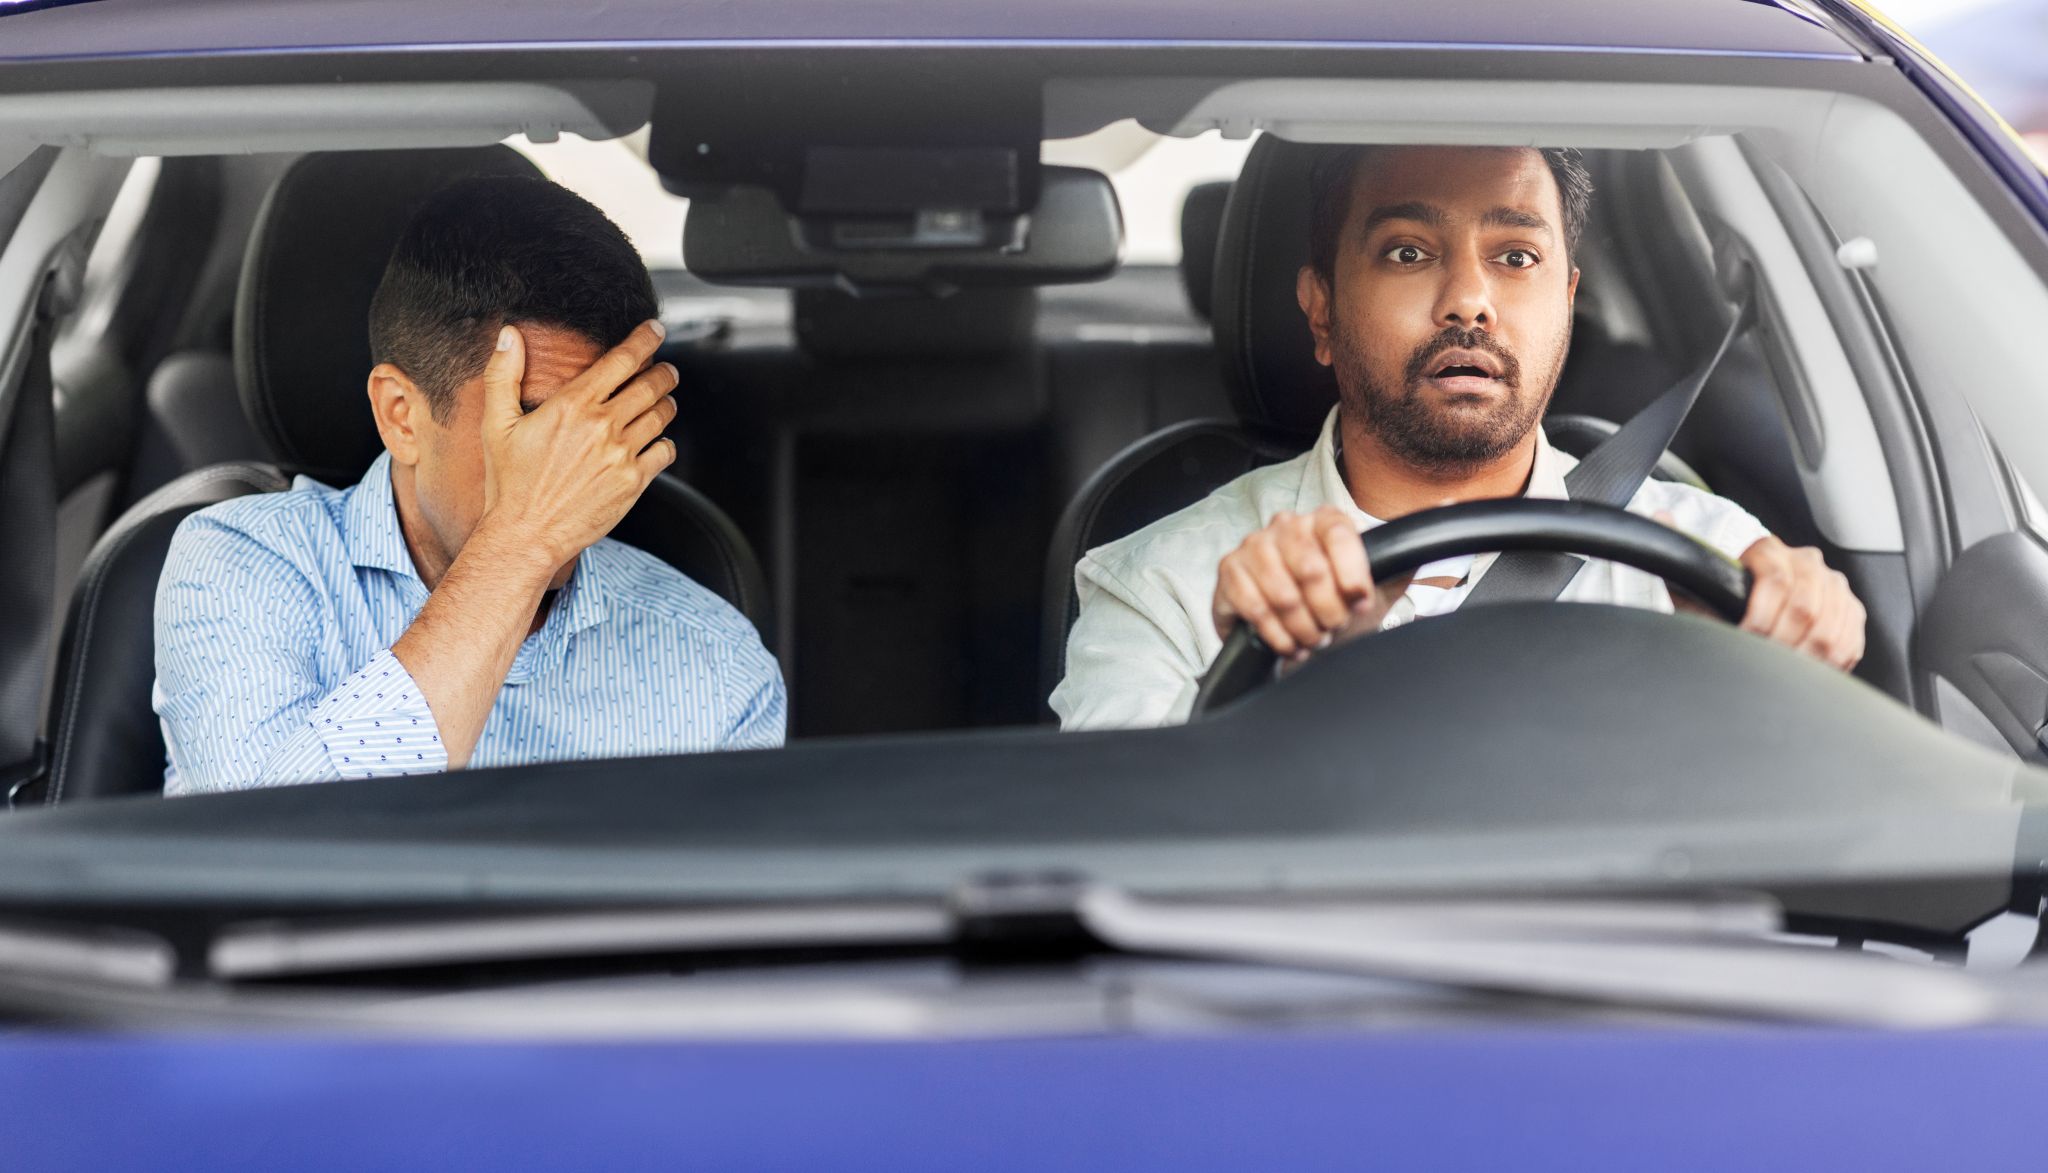 10 erros que colocam a vida em risco na estrada (e dão multas e pontos)